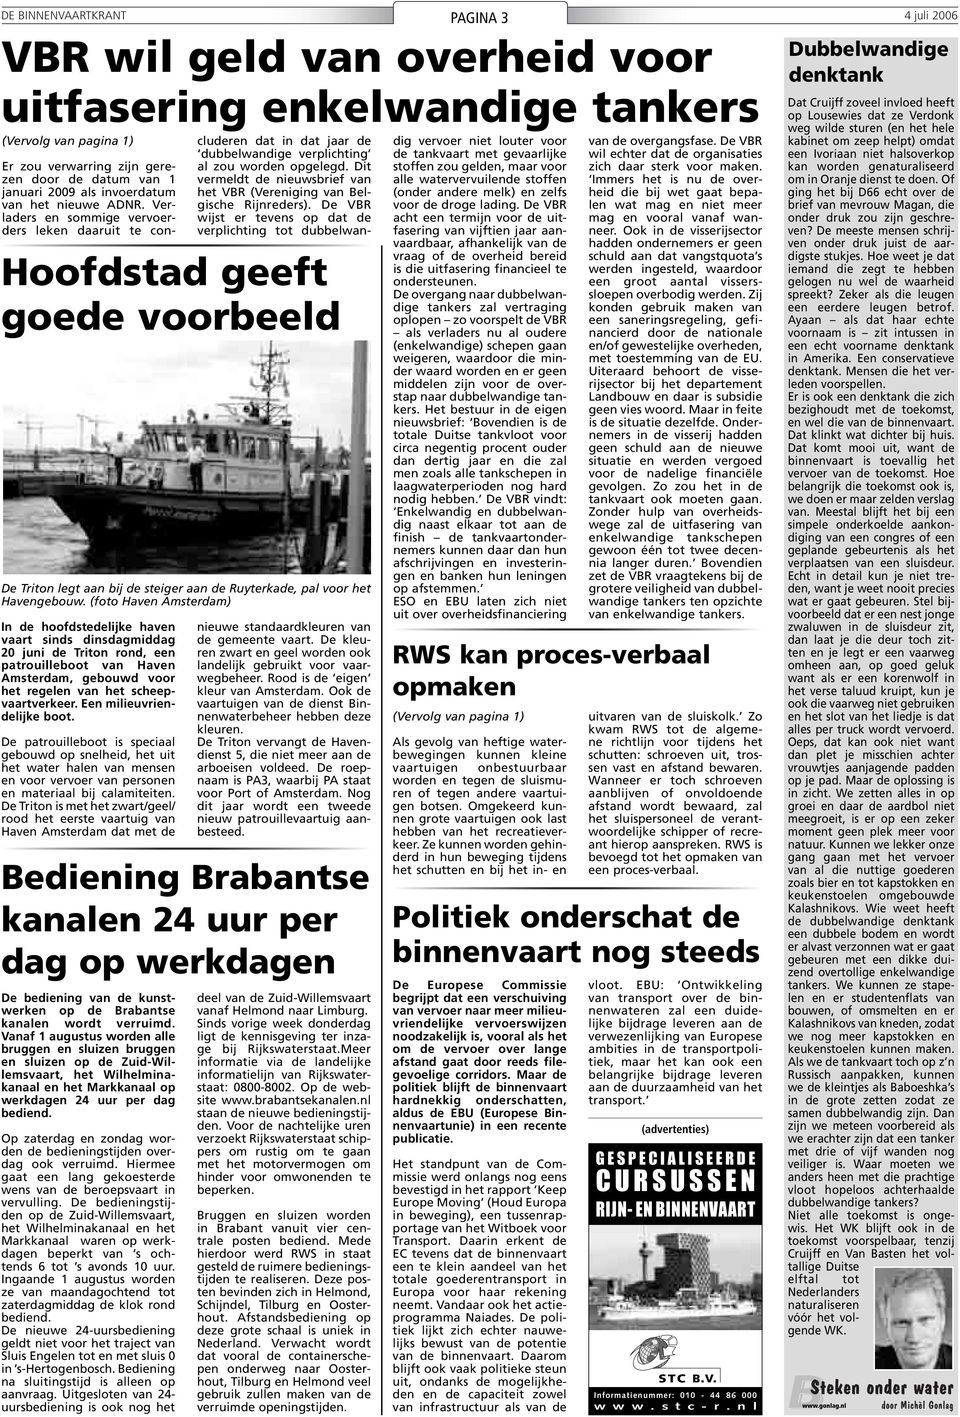 (foto Haven Amsterdam) In de hoofdstedelijke haven vaart sinds dinsdagmiddag 20 juni de Triton rond, een patrouilleboot van Haven Amsterdam, gebouwd voor het regelen van het scheepvaartverkeer.